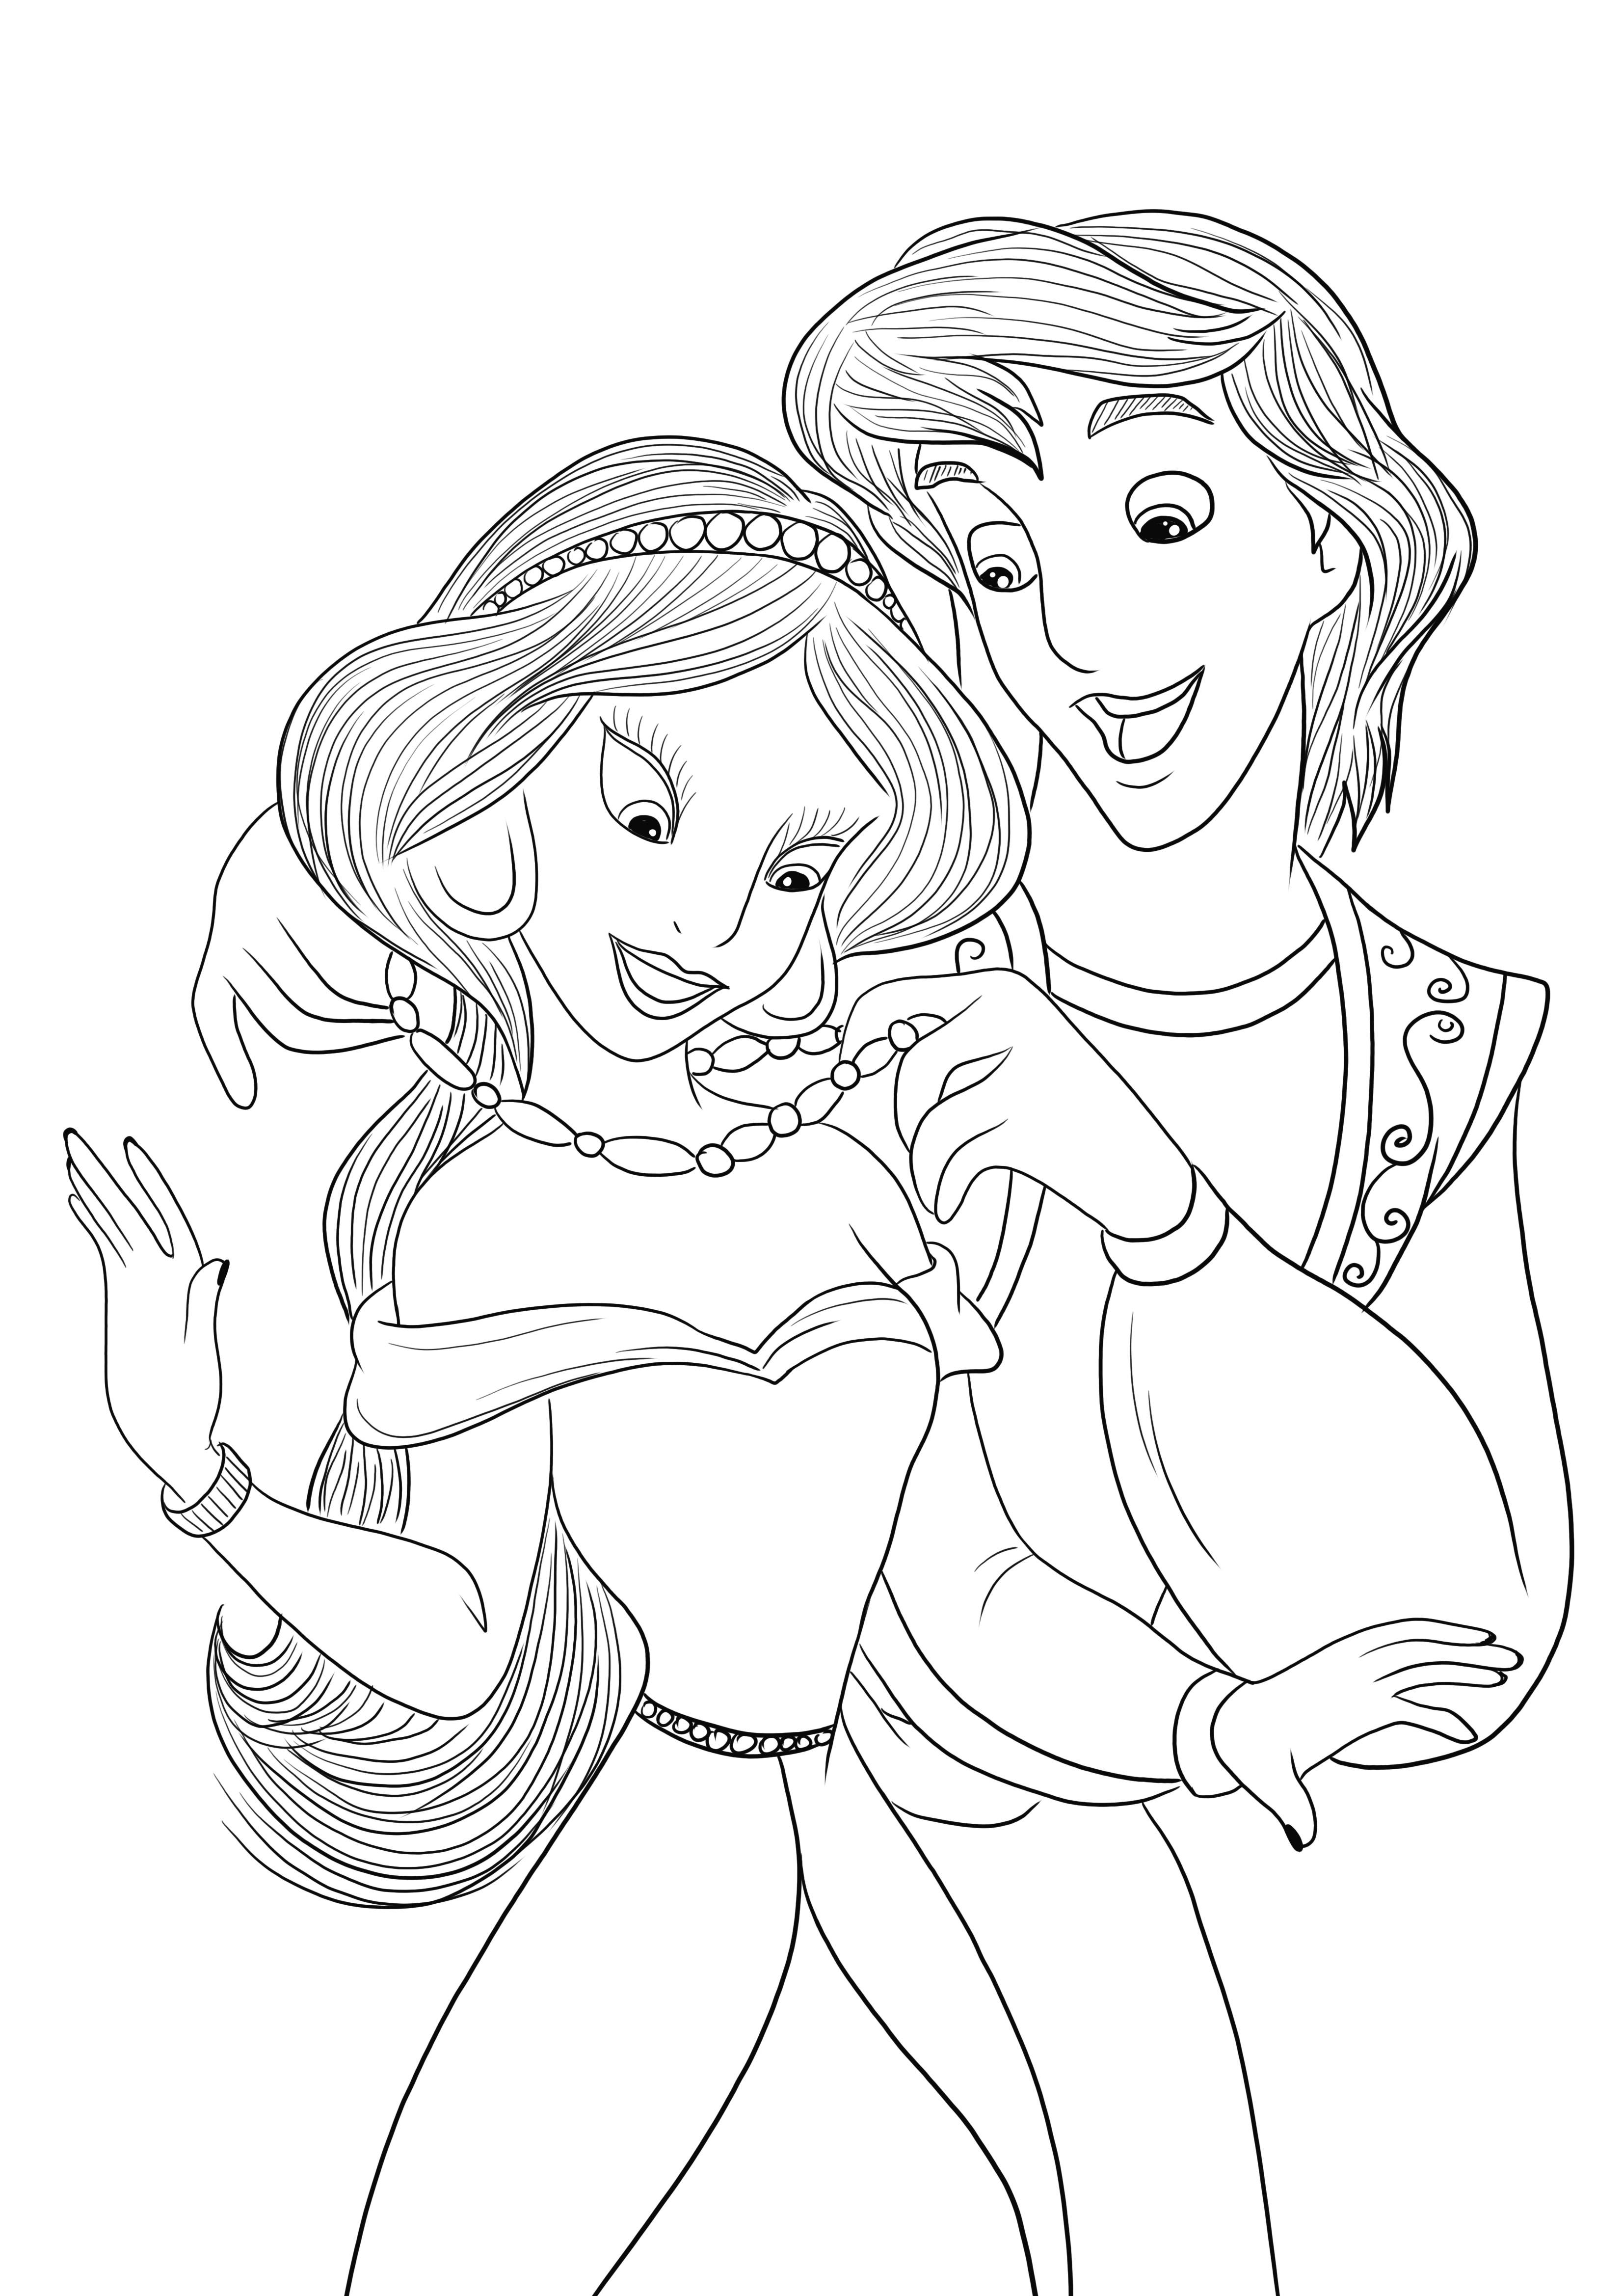 Unduh gratis gambar mewarnai Aladdin dan Jasmine untuk diwarnai anak-anak